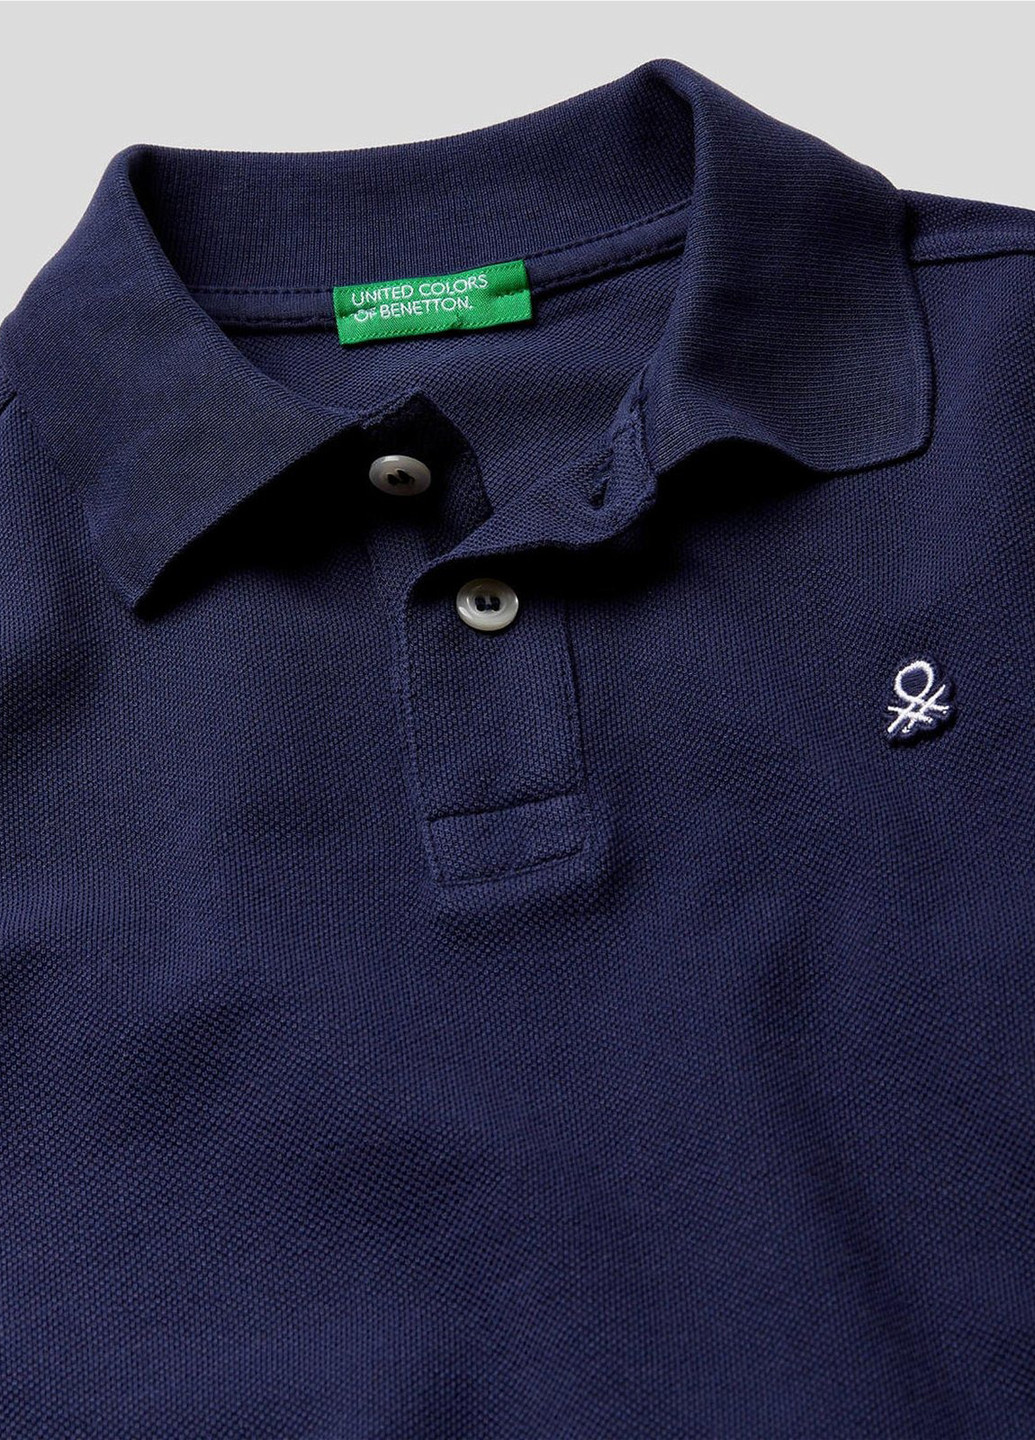 Темно-синяя детская футболка-поло для мальчика United Colors of Benetton однотонная